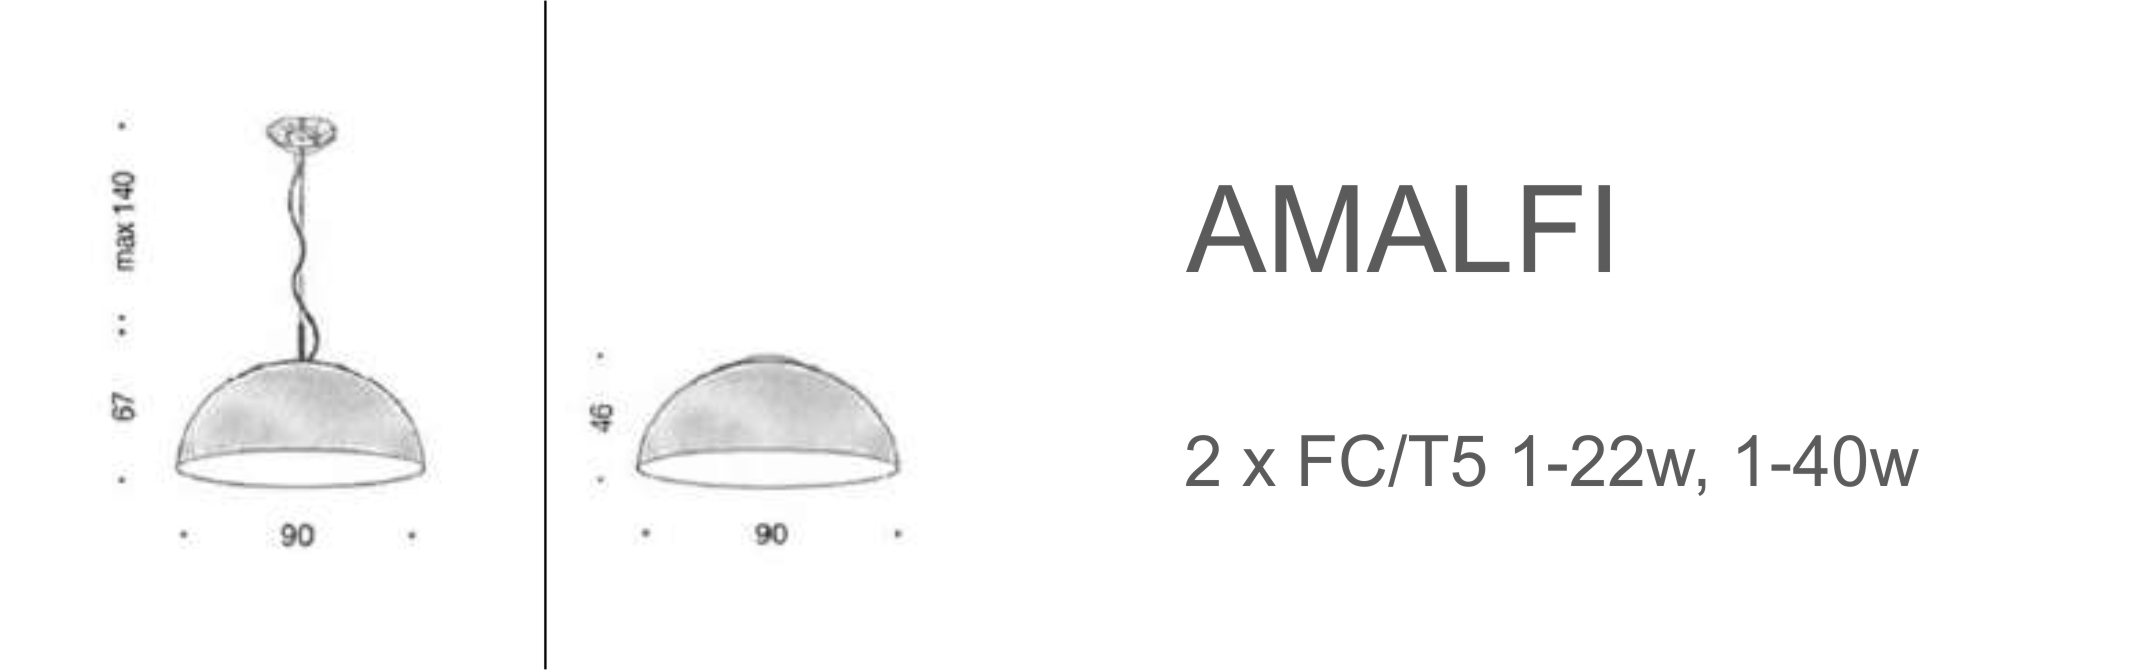 Amalfi - D90 (FC/T5)